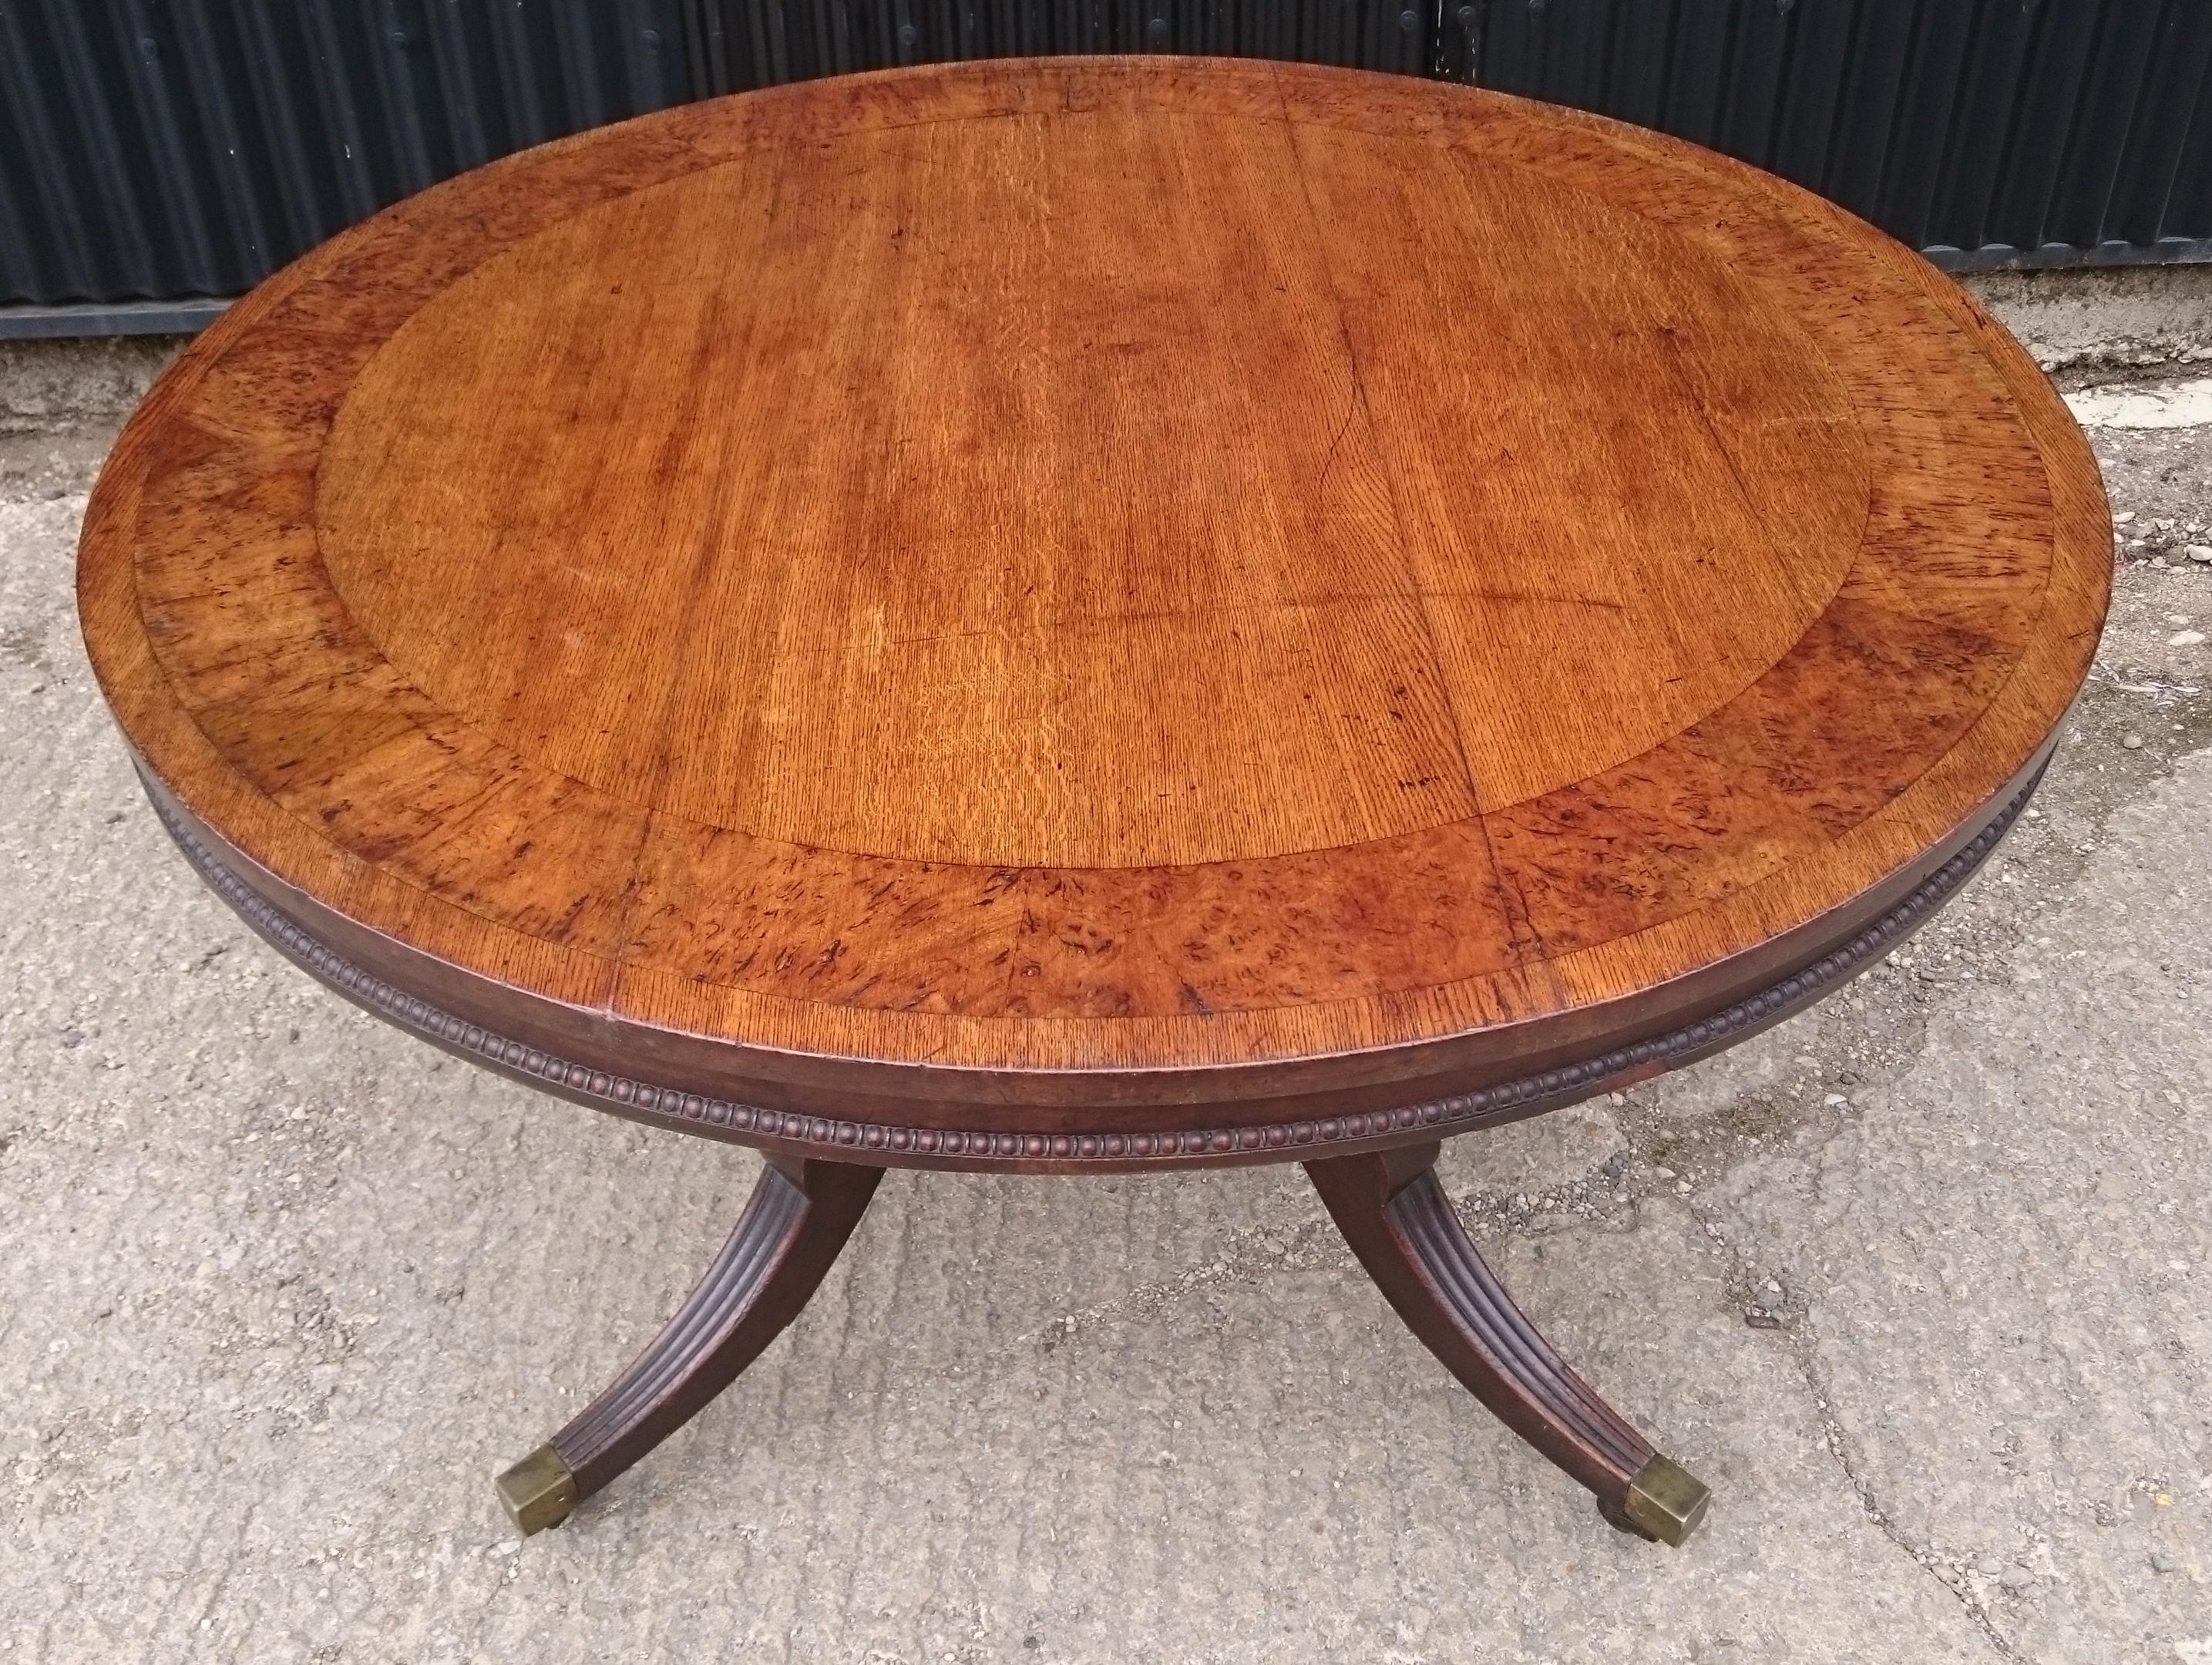 19th Century Regency Center Table Table Made Of Oak With Burr Oak Banding (19. Jahrhundert)